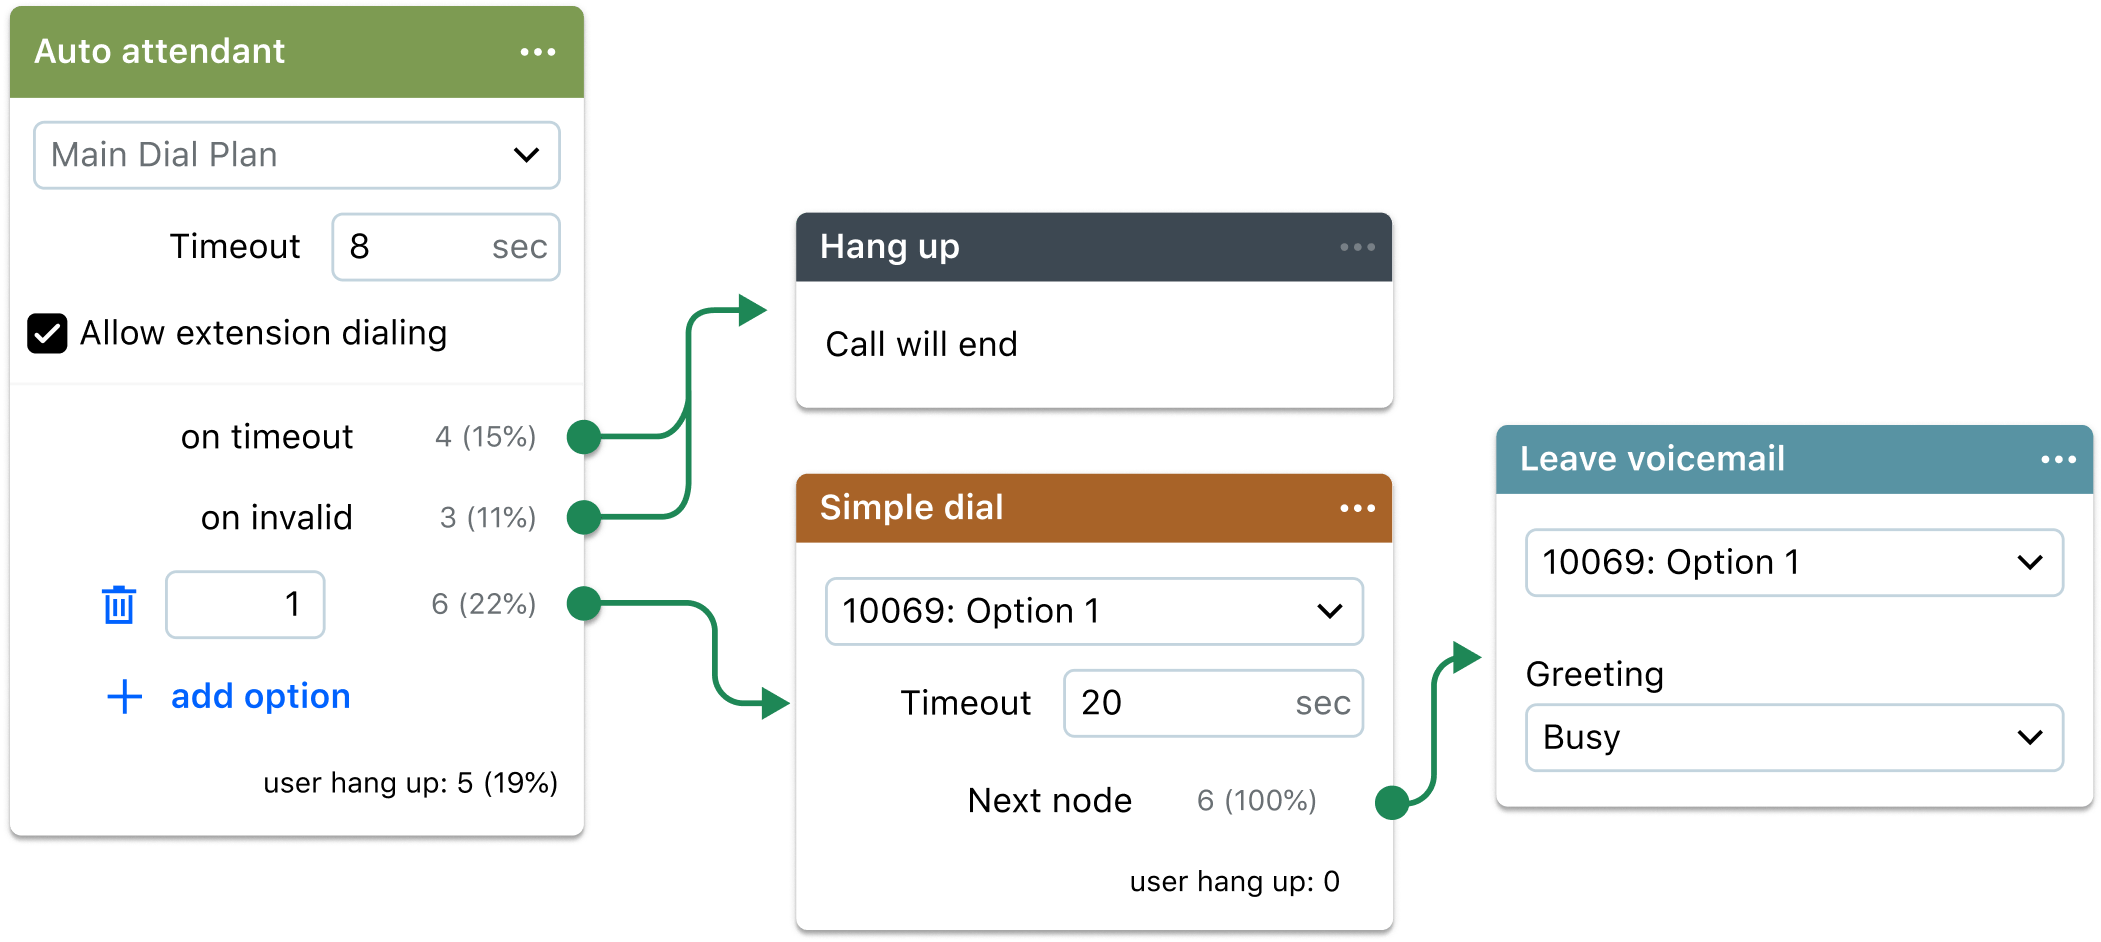 Colagem exibindo opções de plano de chamadas saindo do recurso de atendente virtual do GoTo Connect.